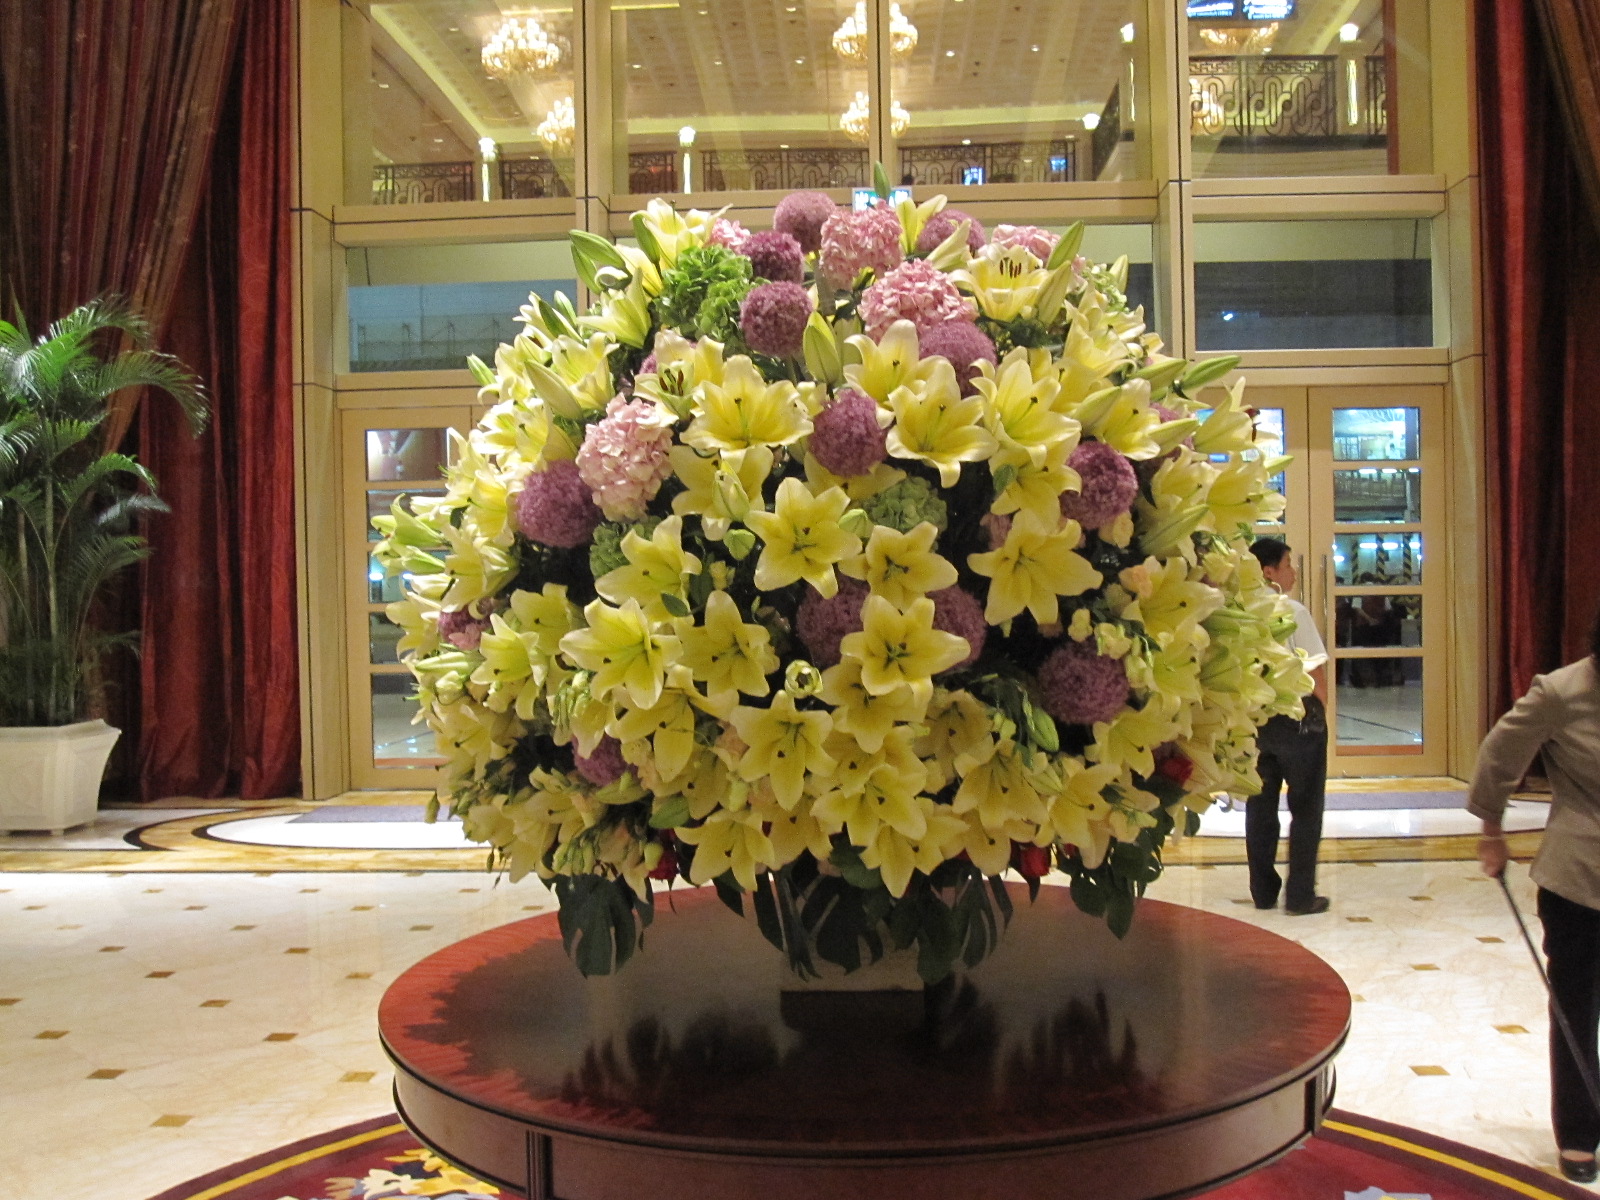 Large lilies arrangements